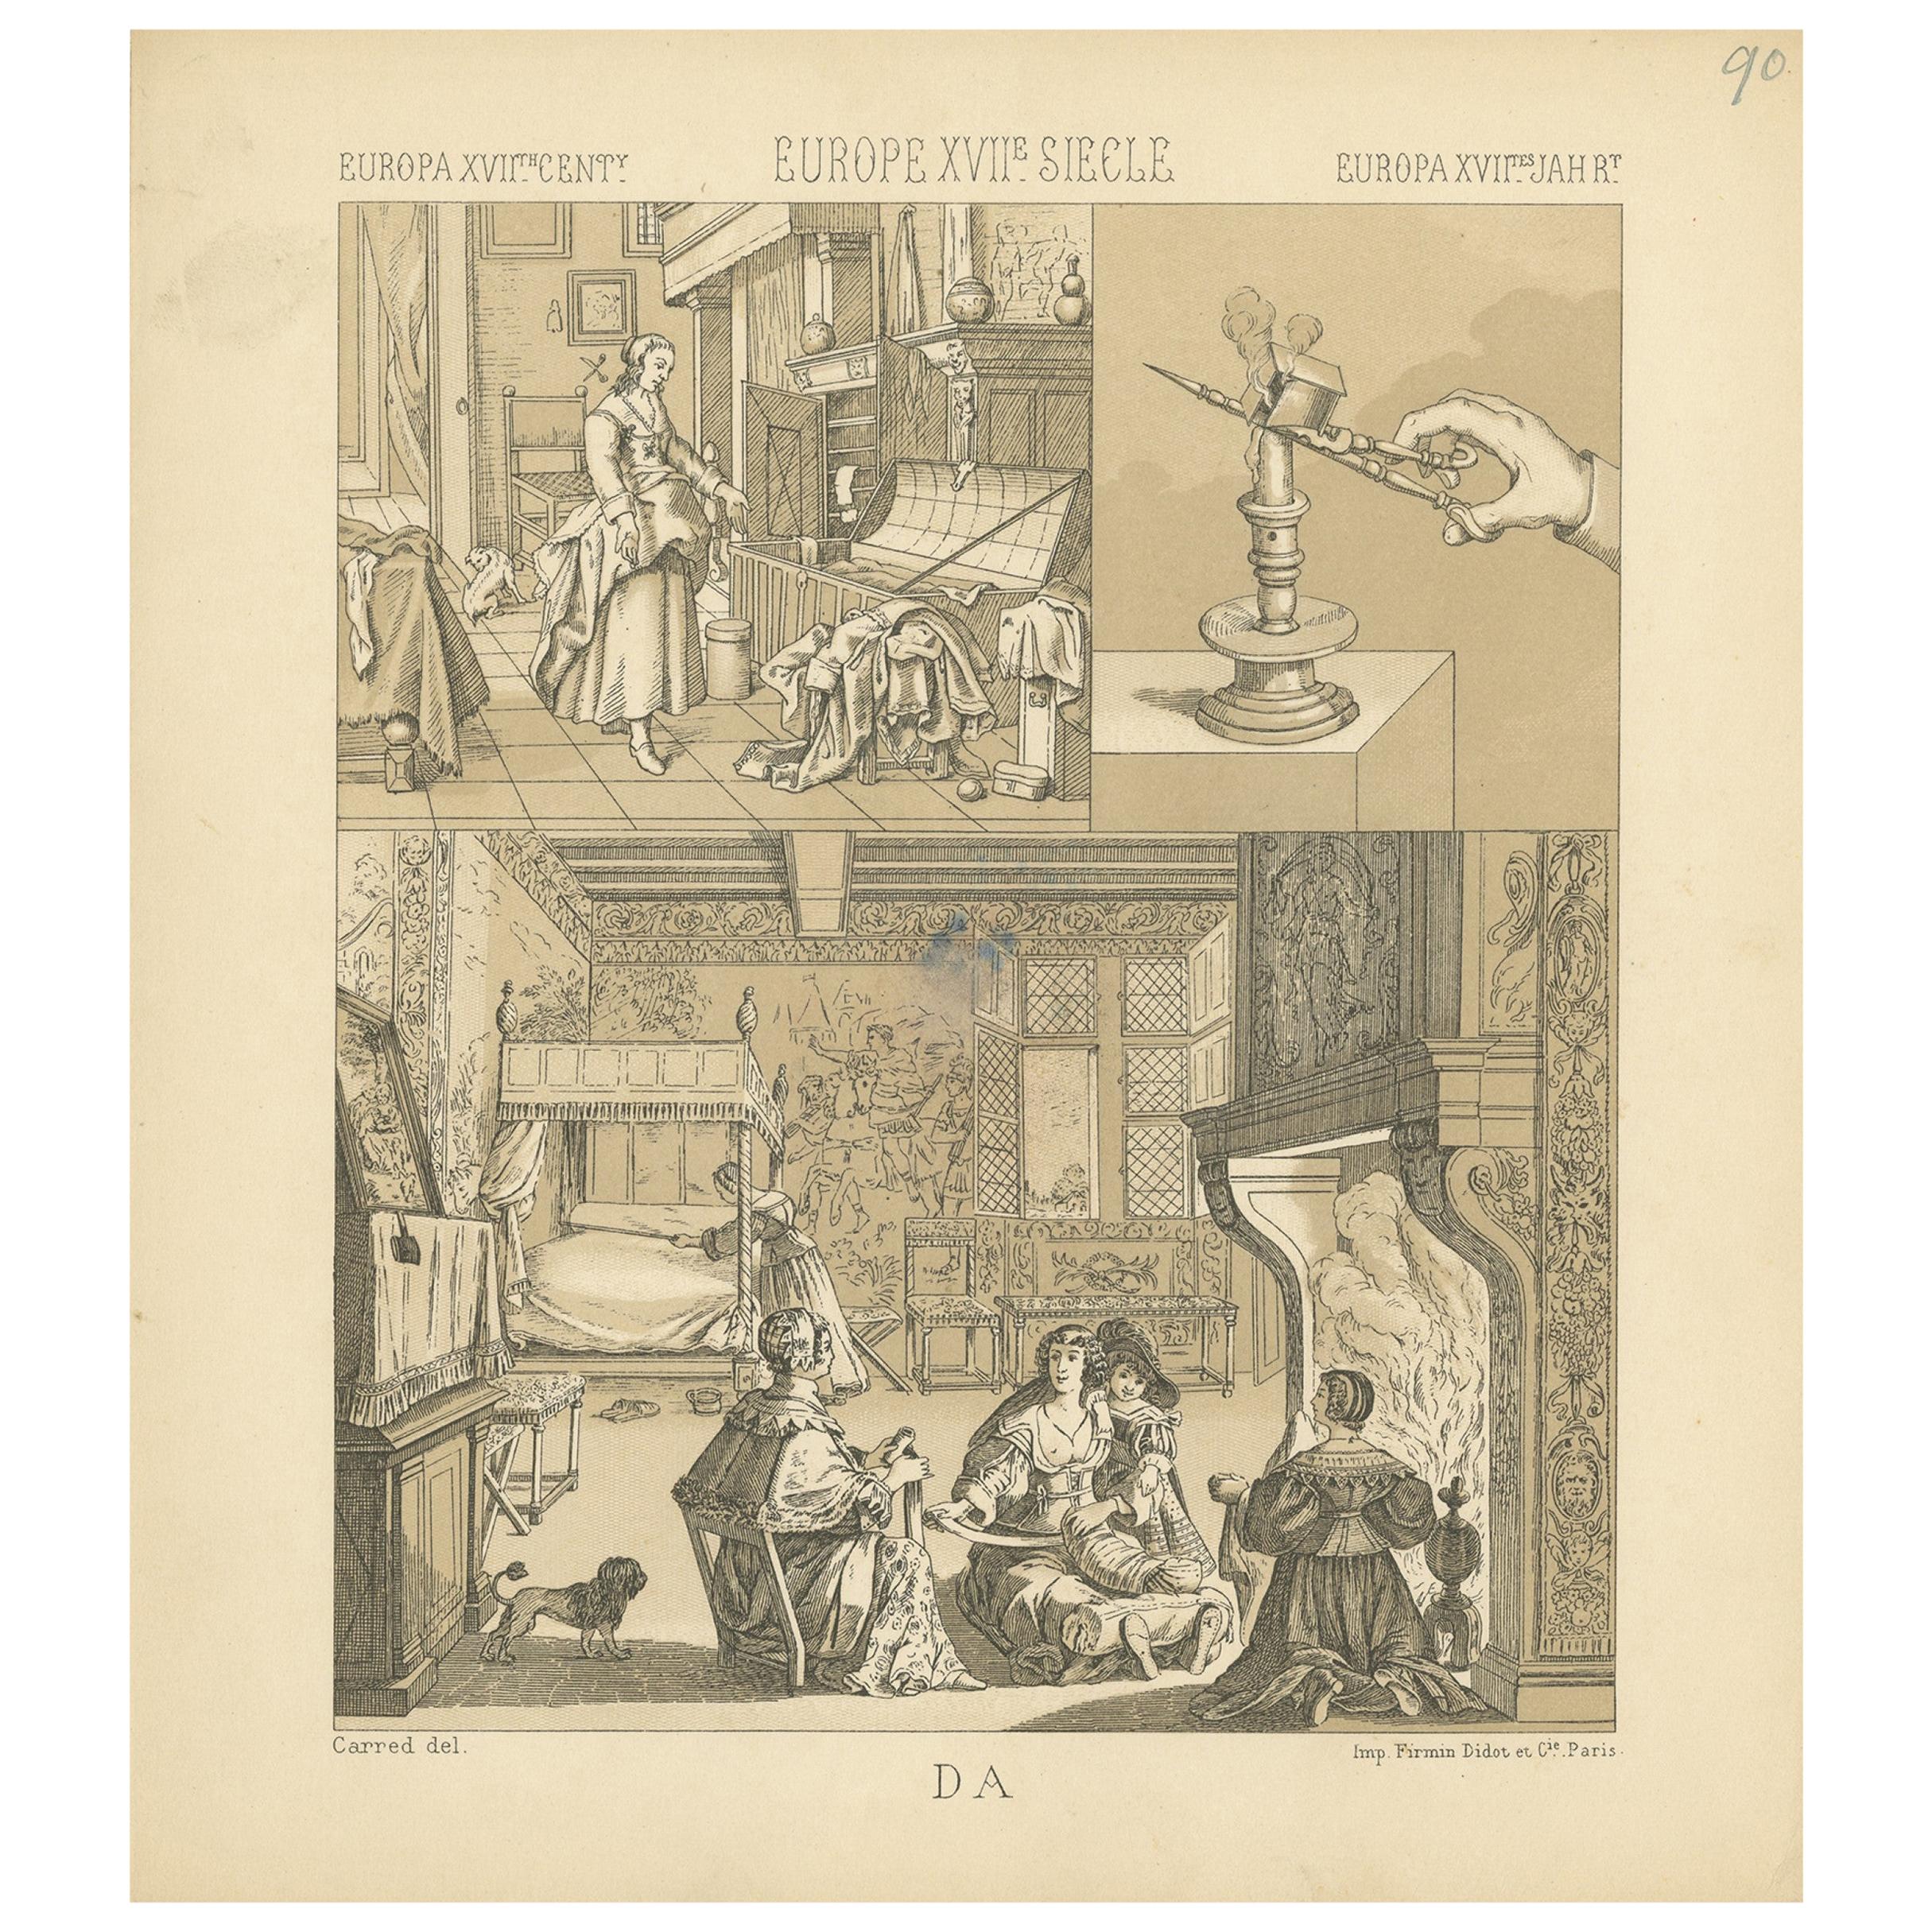 Pl. 90 Antique Print of European XVIIth Century Scenes by Racinet, circa 1880